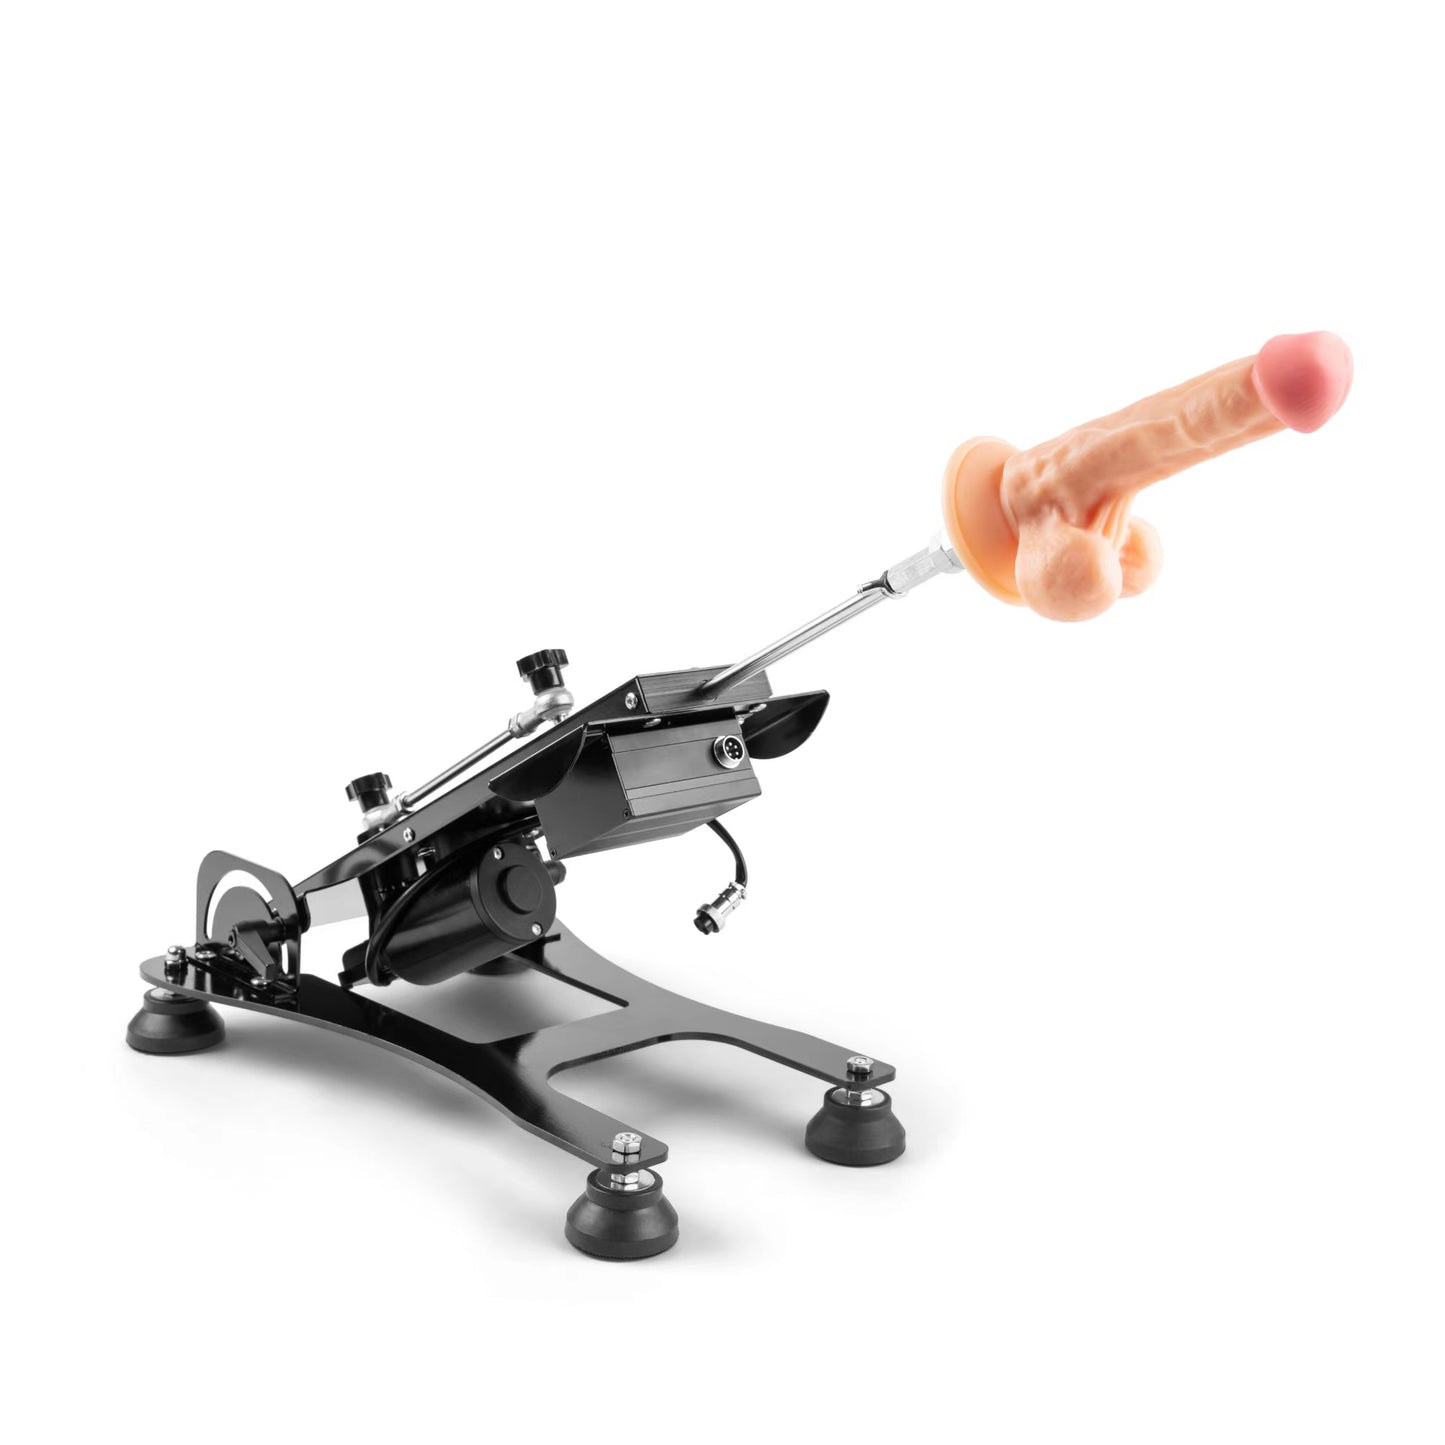 Remote Control Sex Machine - 2x Custom Realistic Dildo Attachment Included